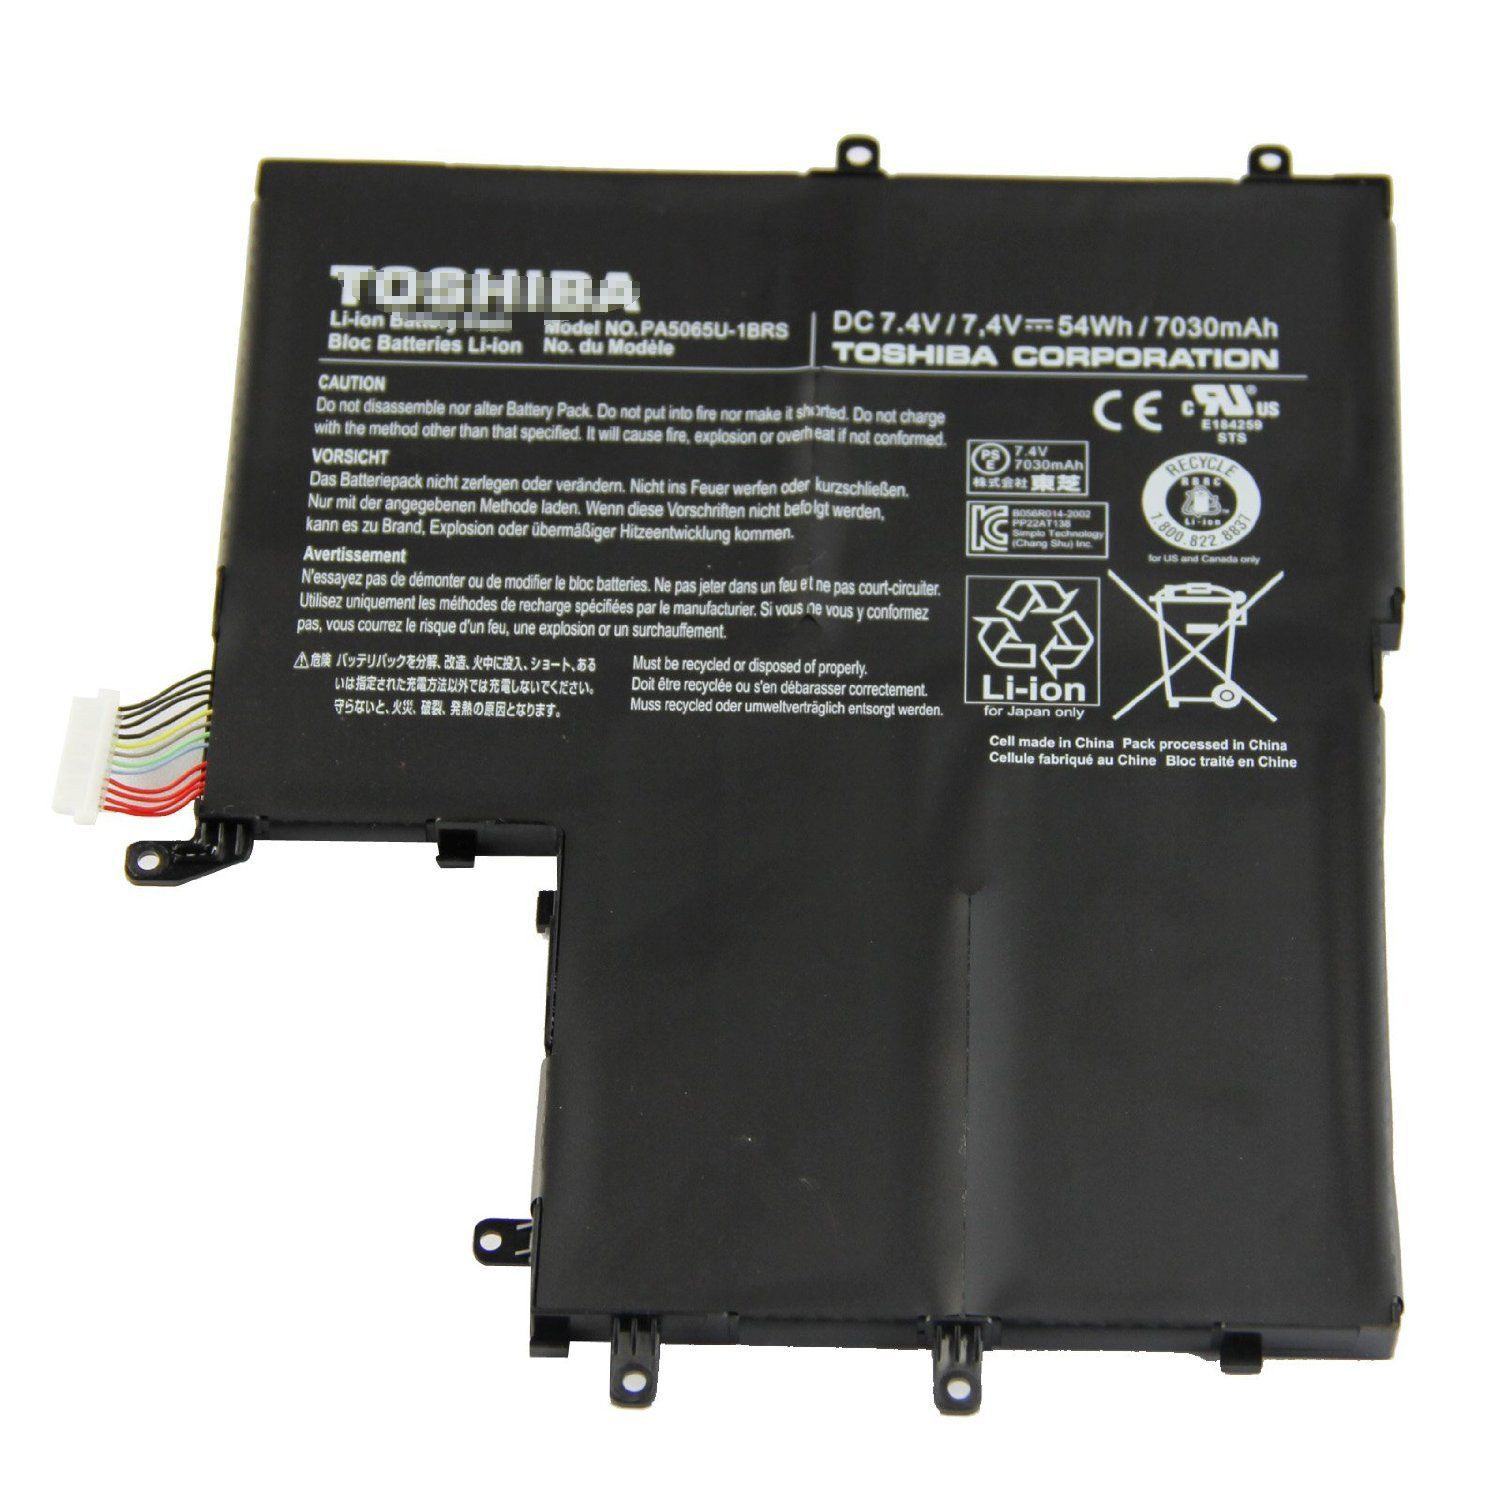 Toshiba u845w s400 drivers